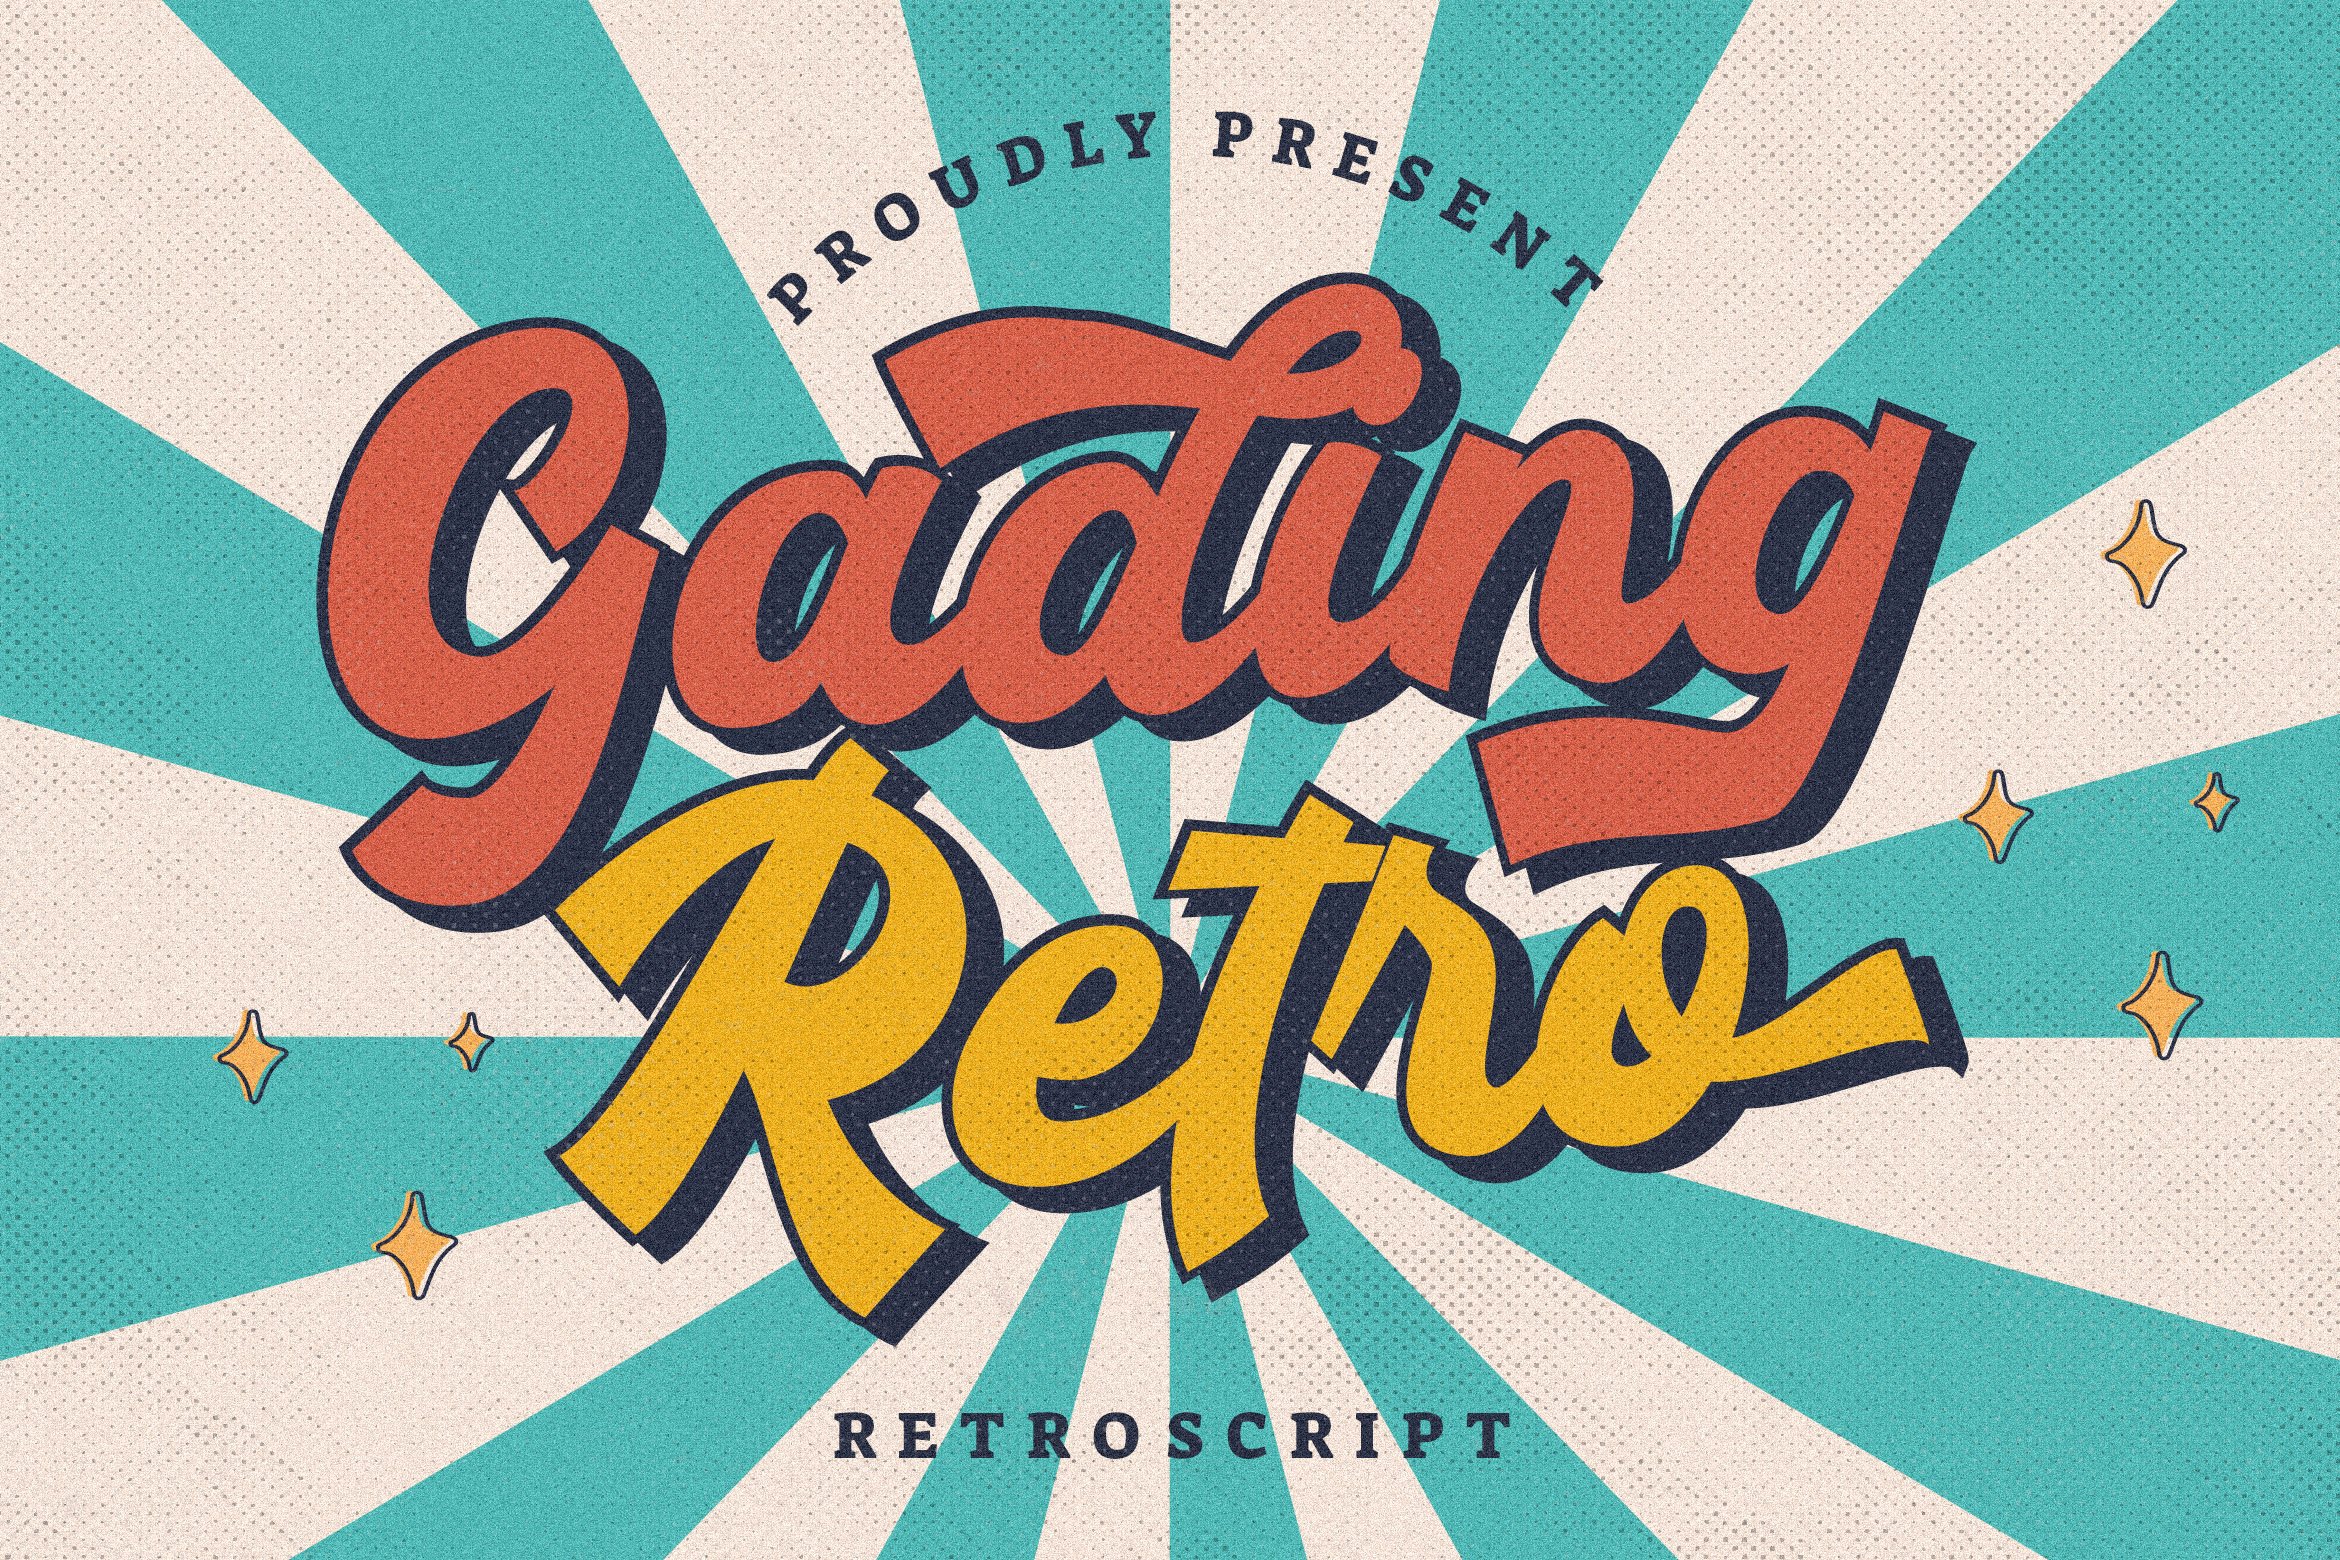 Gading Retro Bold Script cover image.